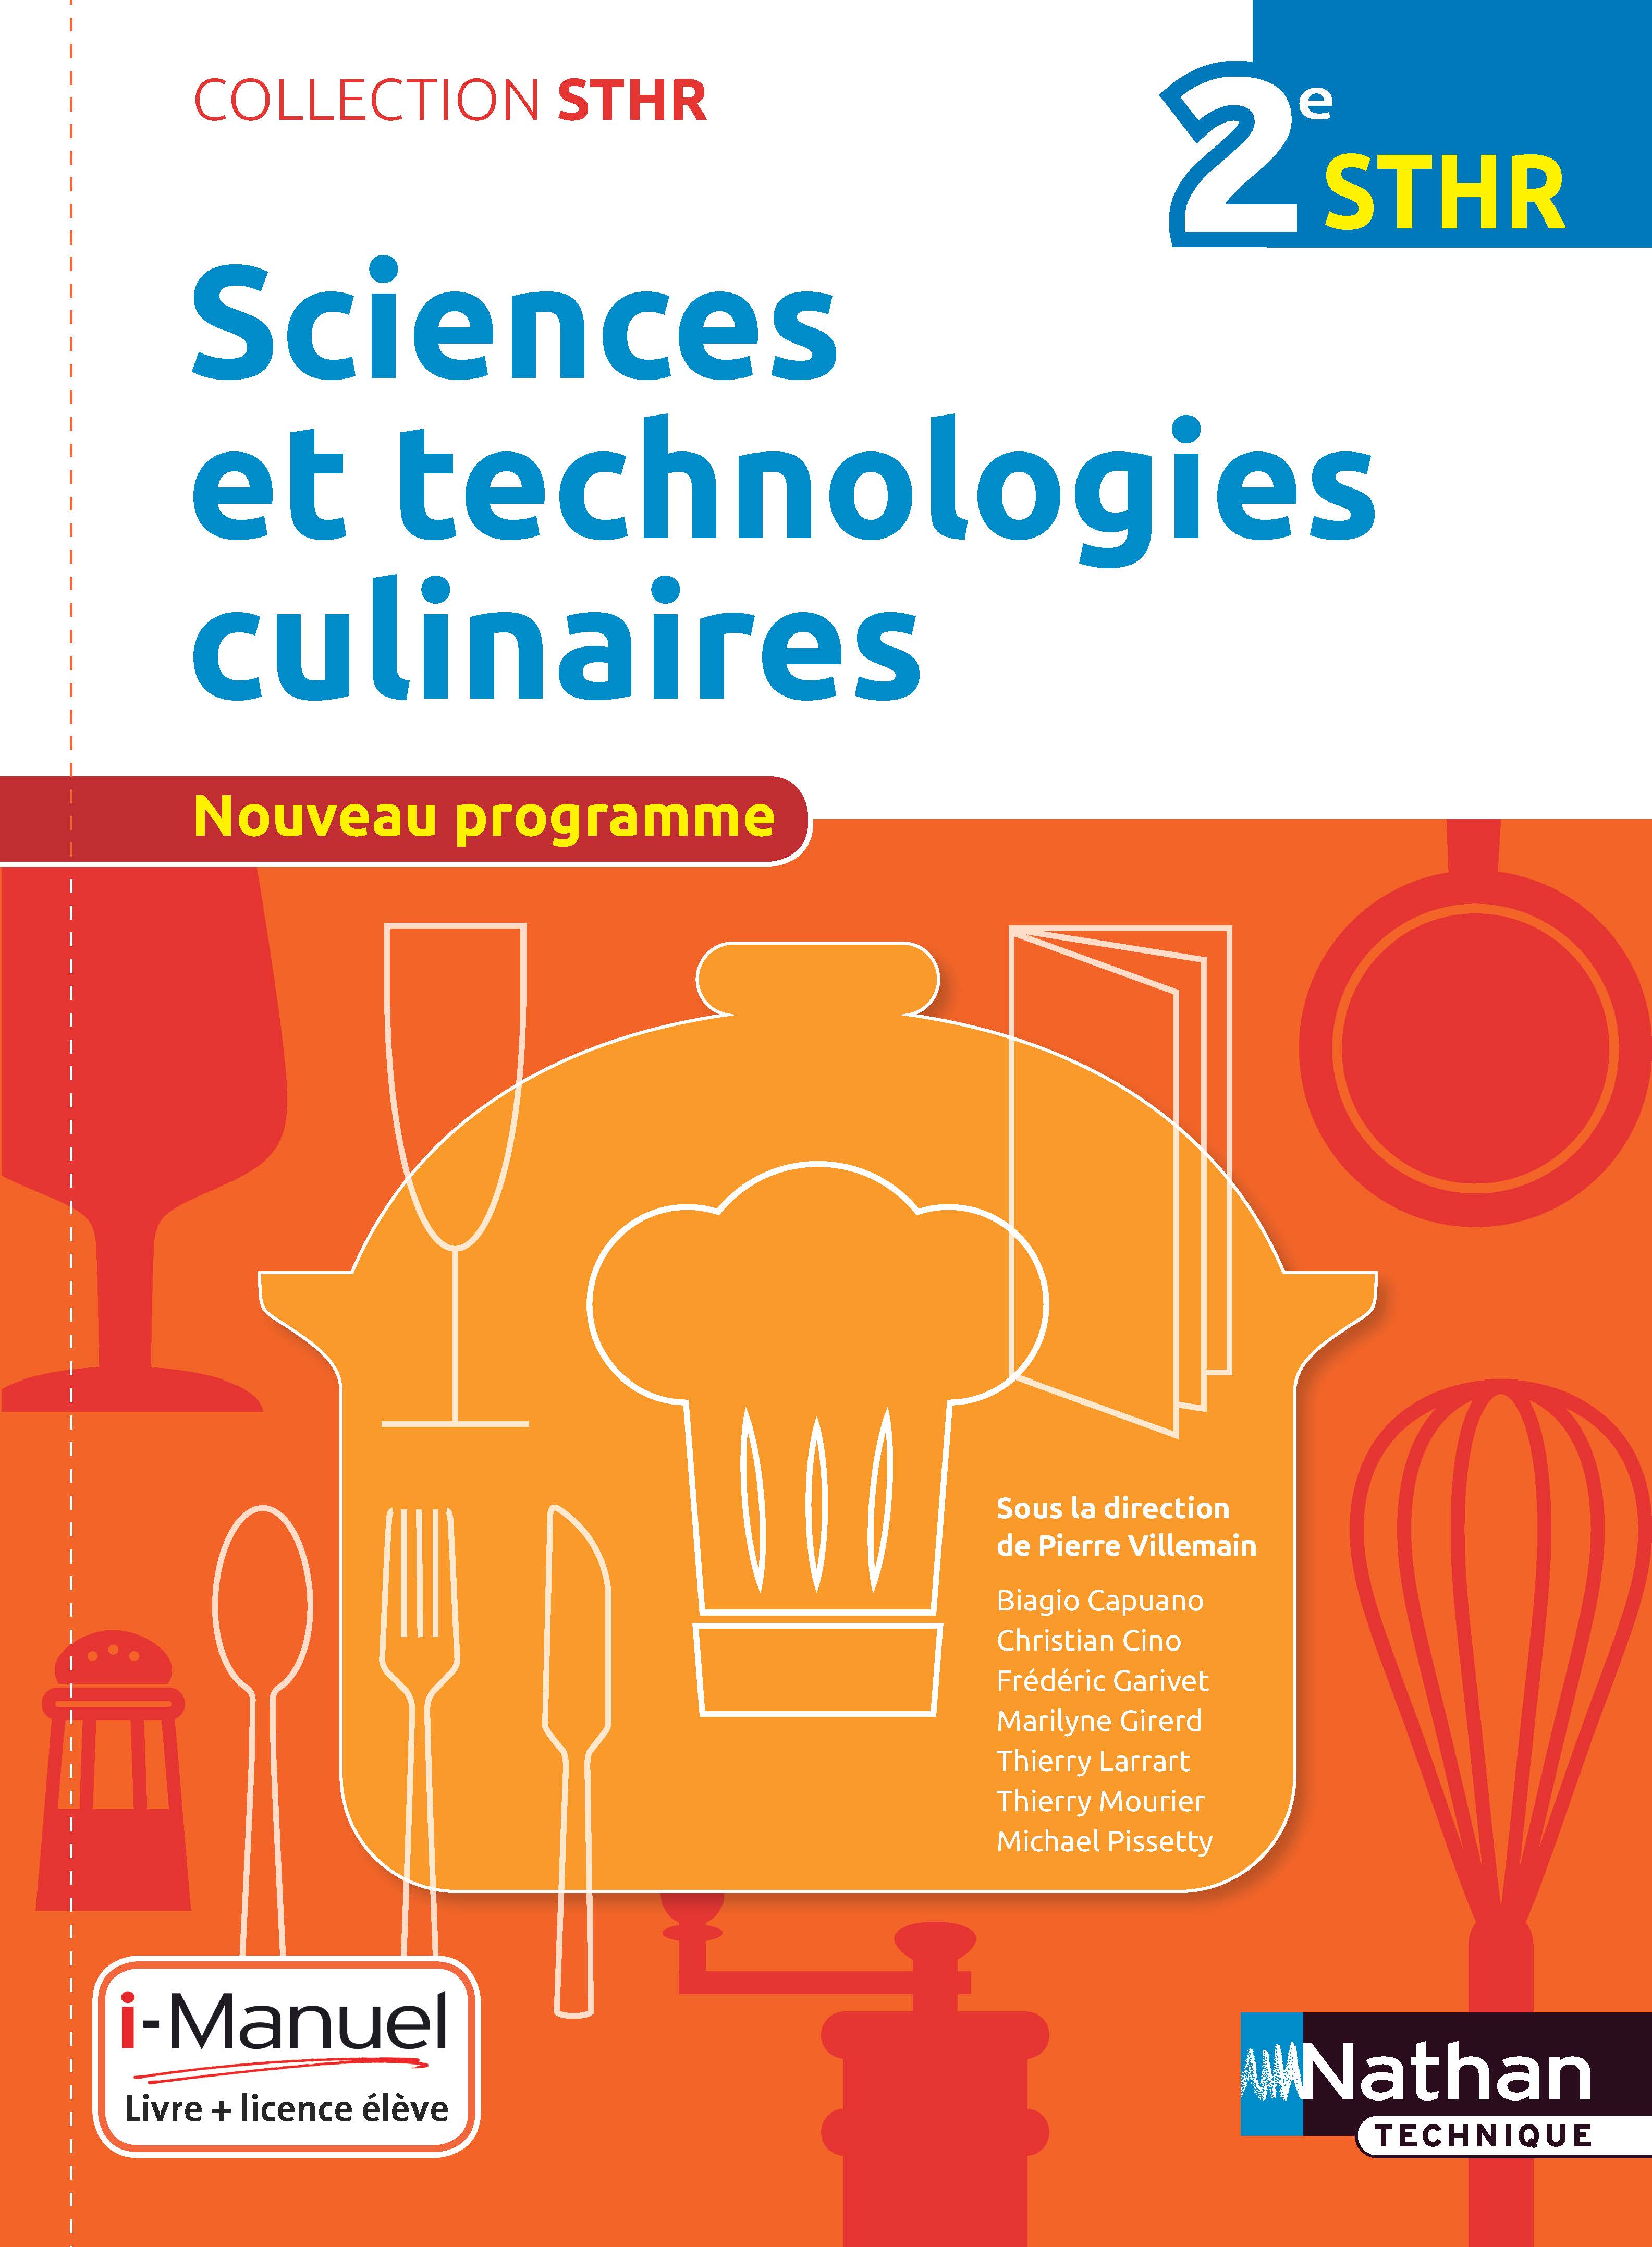 Sciences et technologies culinaires - Bac STHR [2de]